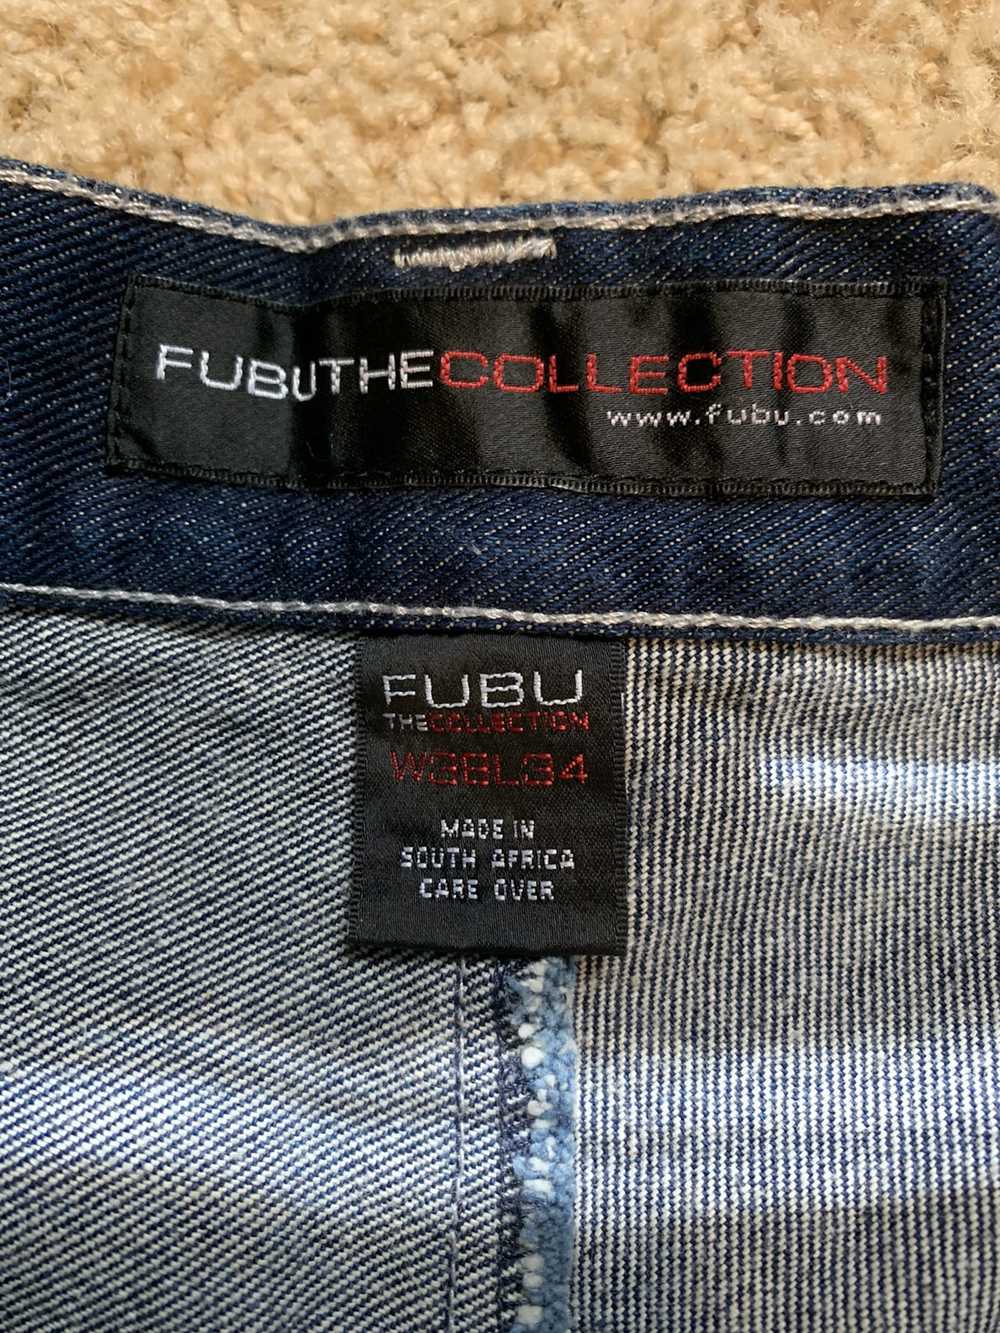 Fubu × Streetwear × Vintage Baggy Fubu Circa XC11 Dar… - Gem